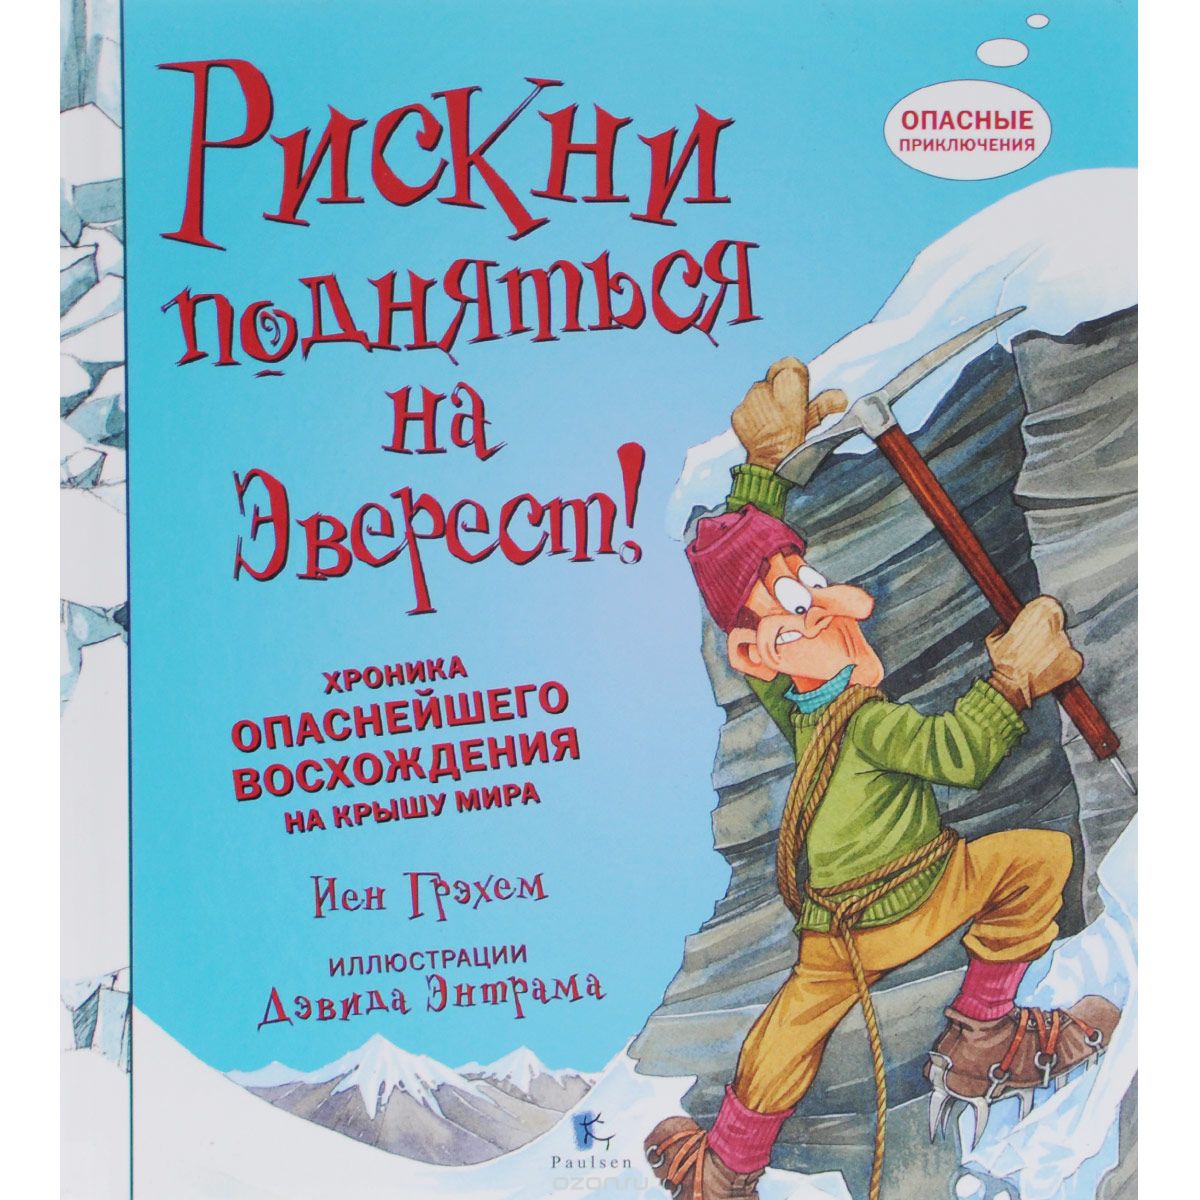 Скачать книгу "Рискни подняться на Эверест! Хроника опаснейшего восхождения на крышу мира, Иен Грэхем"